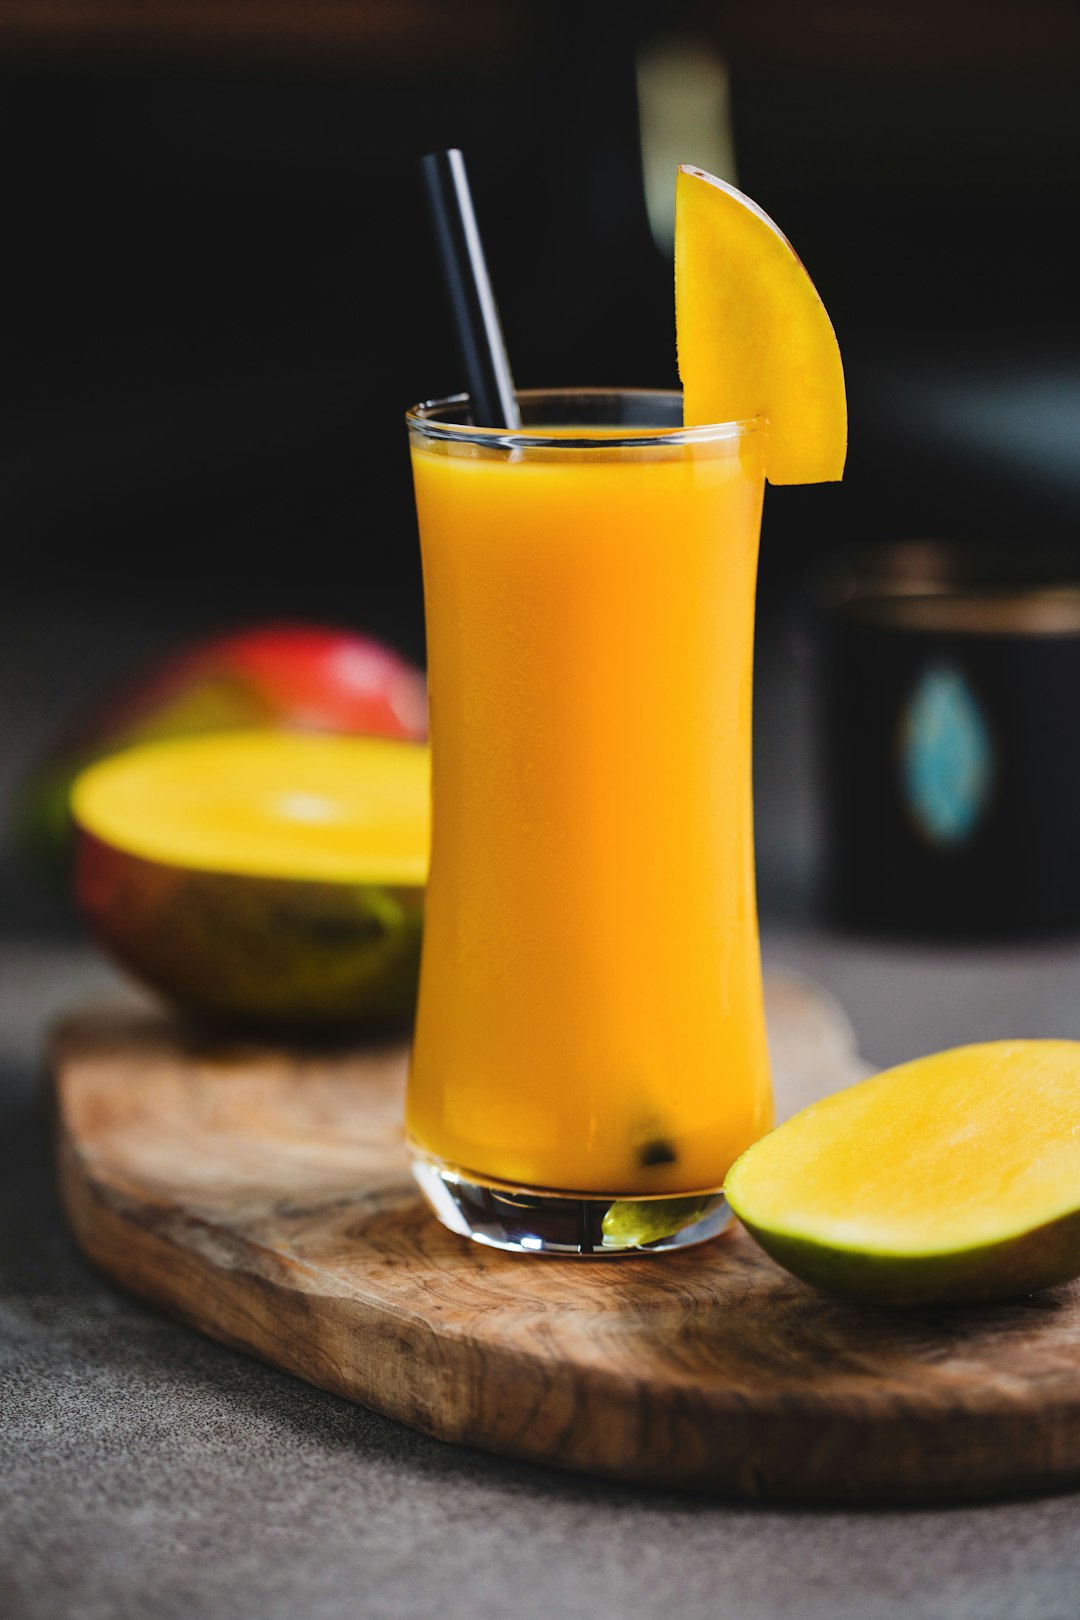 How To Make Mango Juice In Bangkalan City